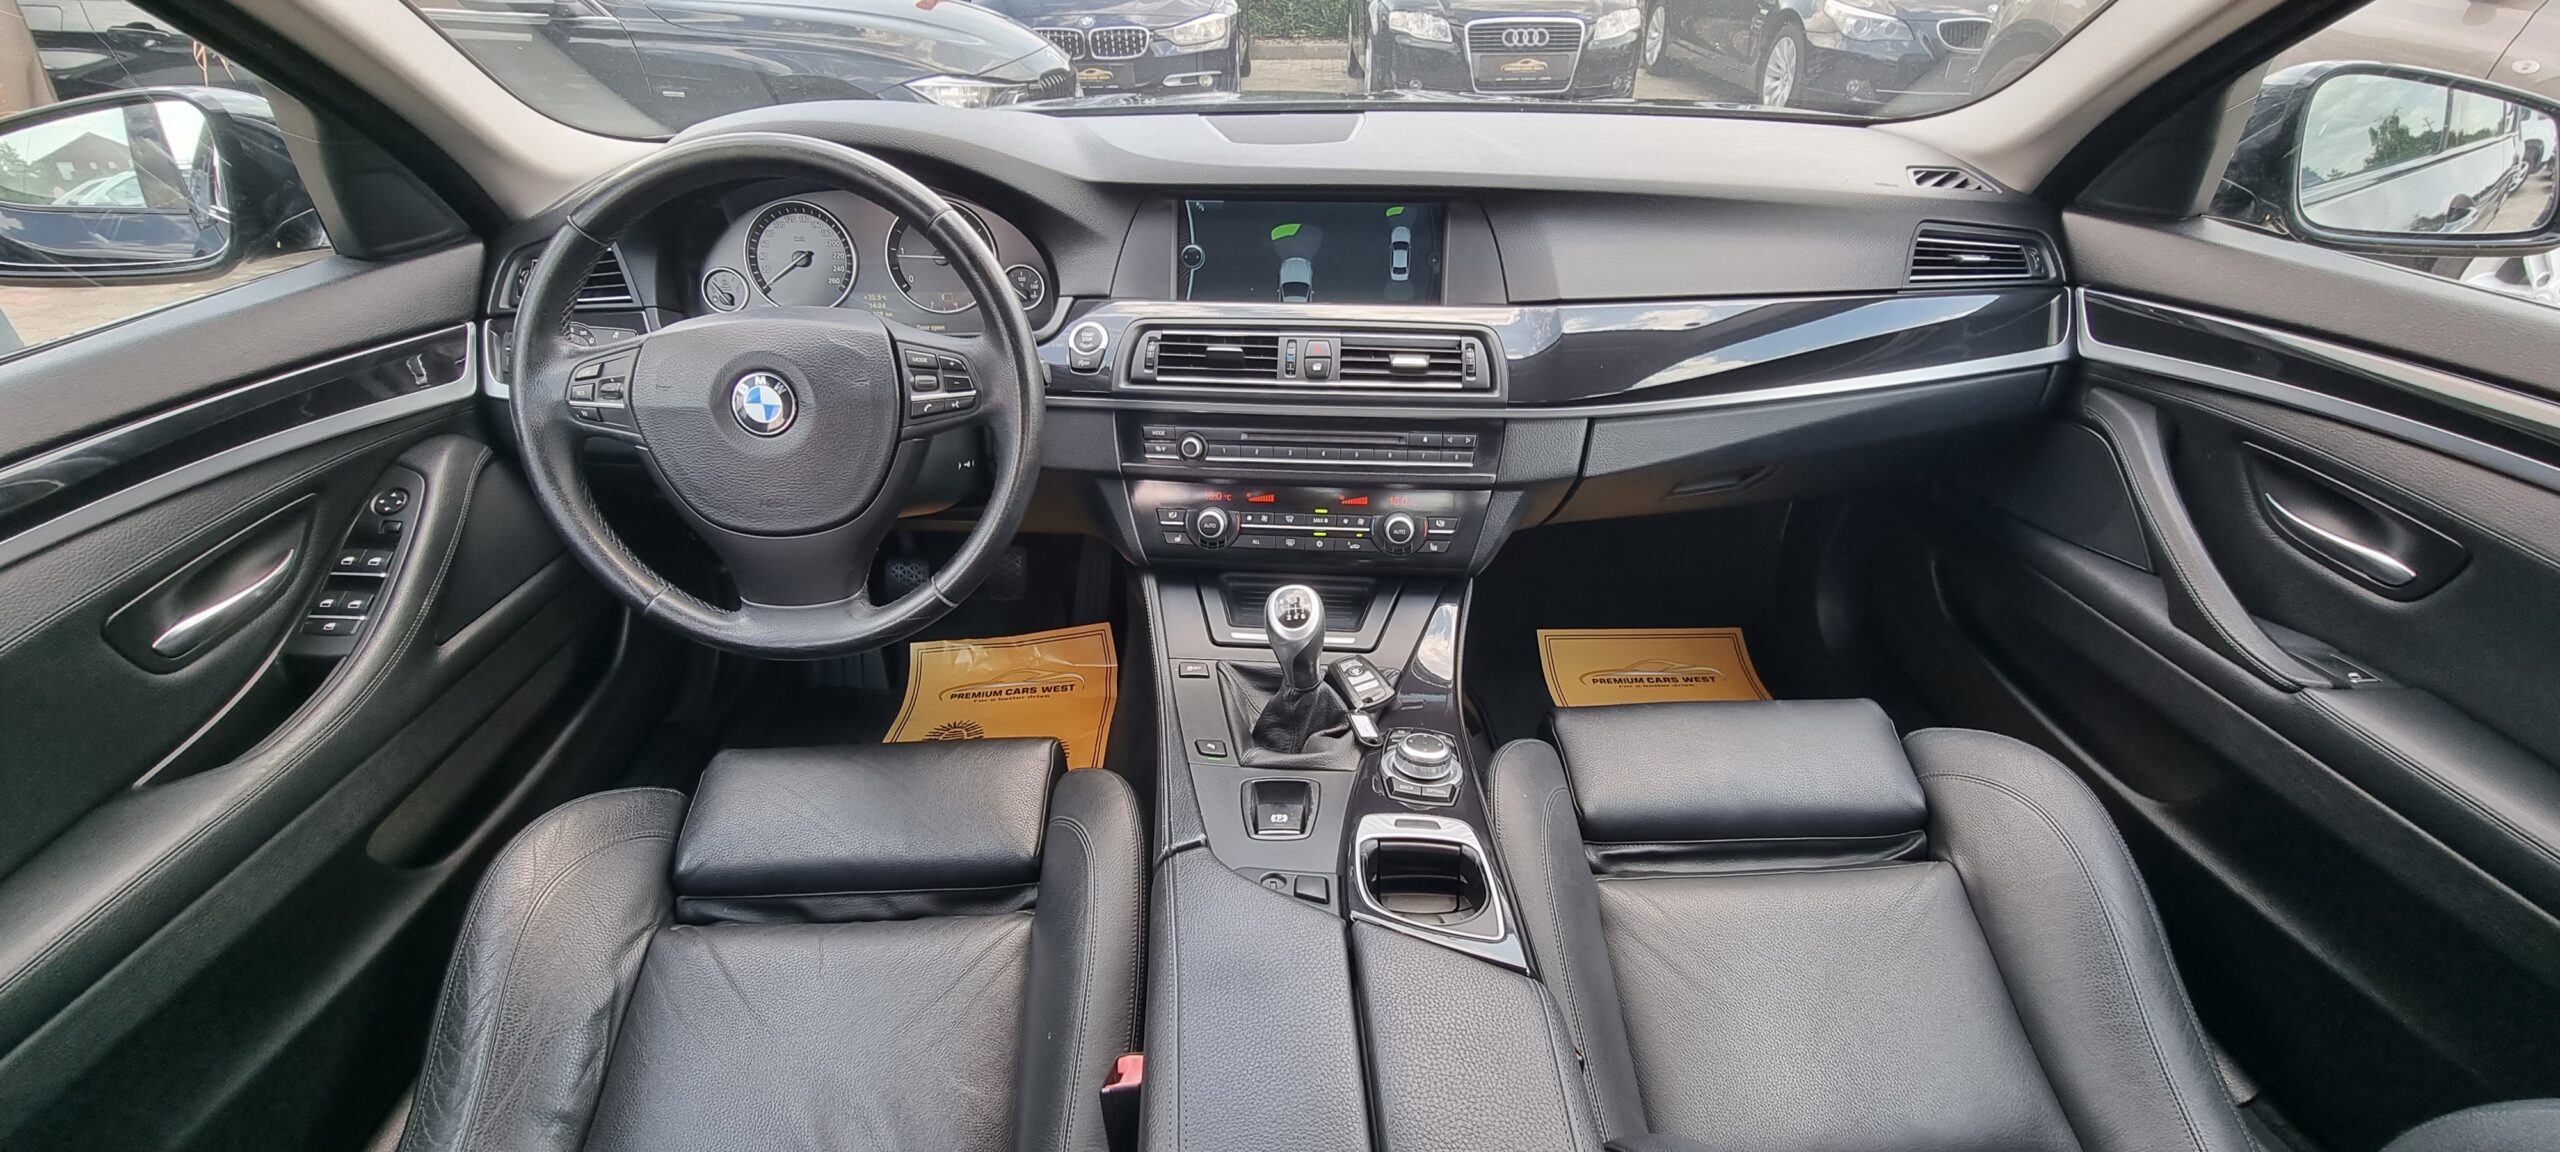 BMW SERIA 5 F 10, 2.0 DIESEL, 184 CP, EURO 5, AN 2011